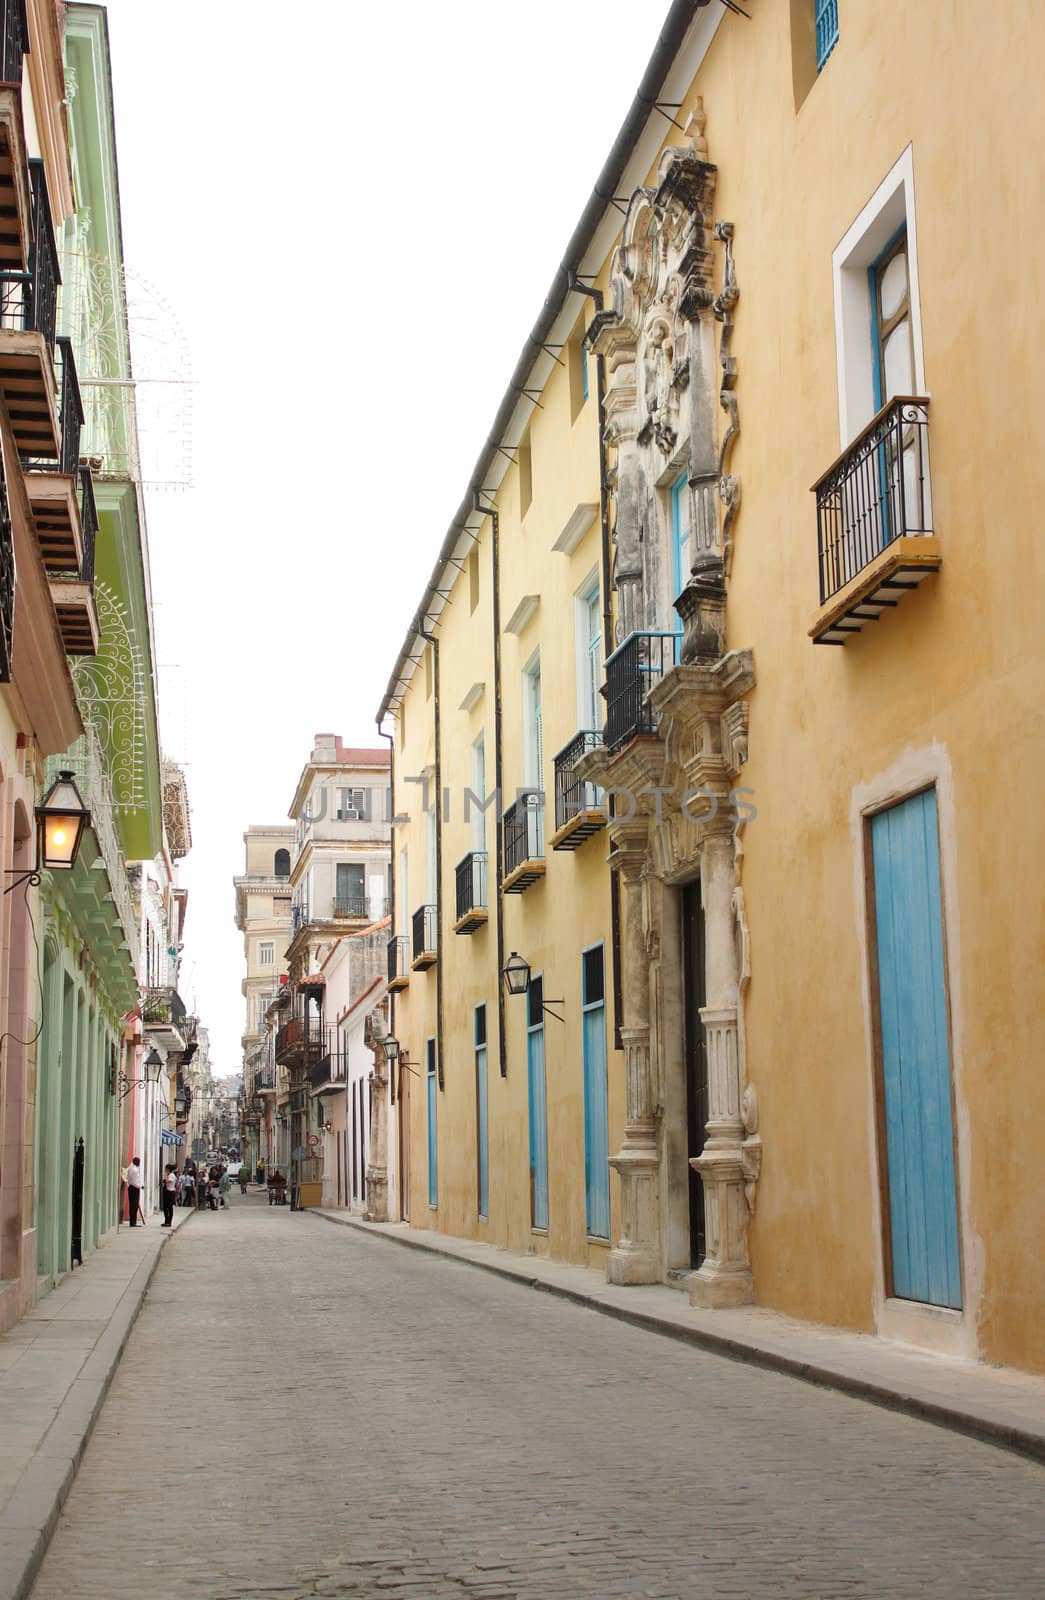 A street in the city of Havana, Cuba.